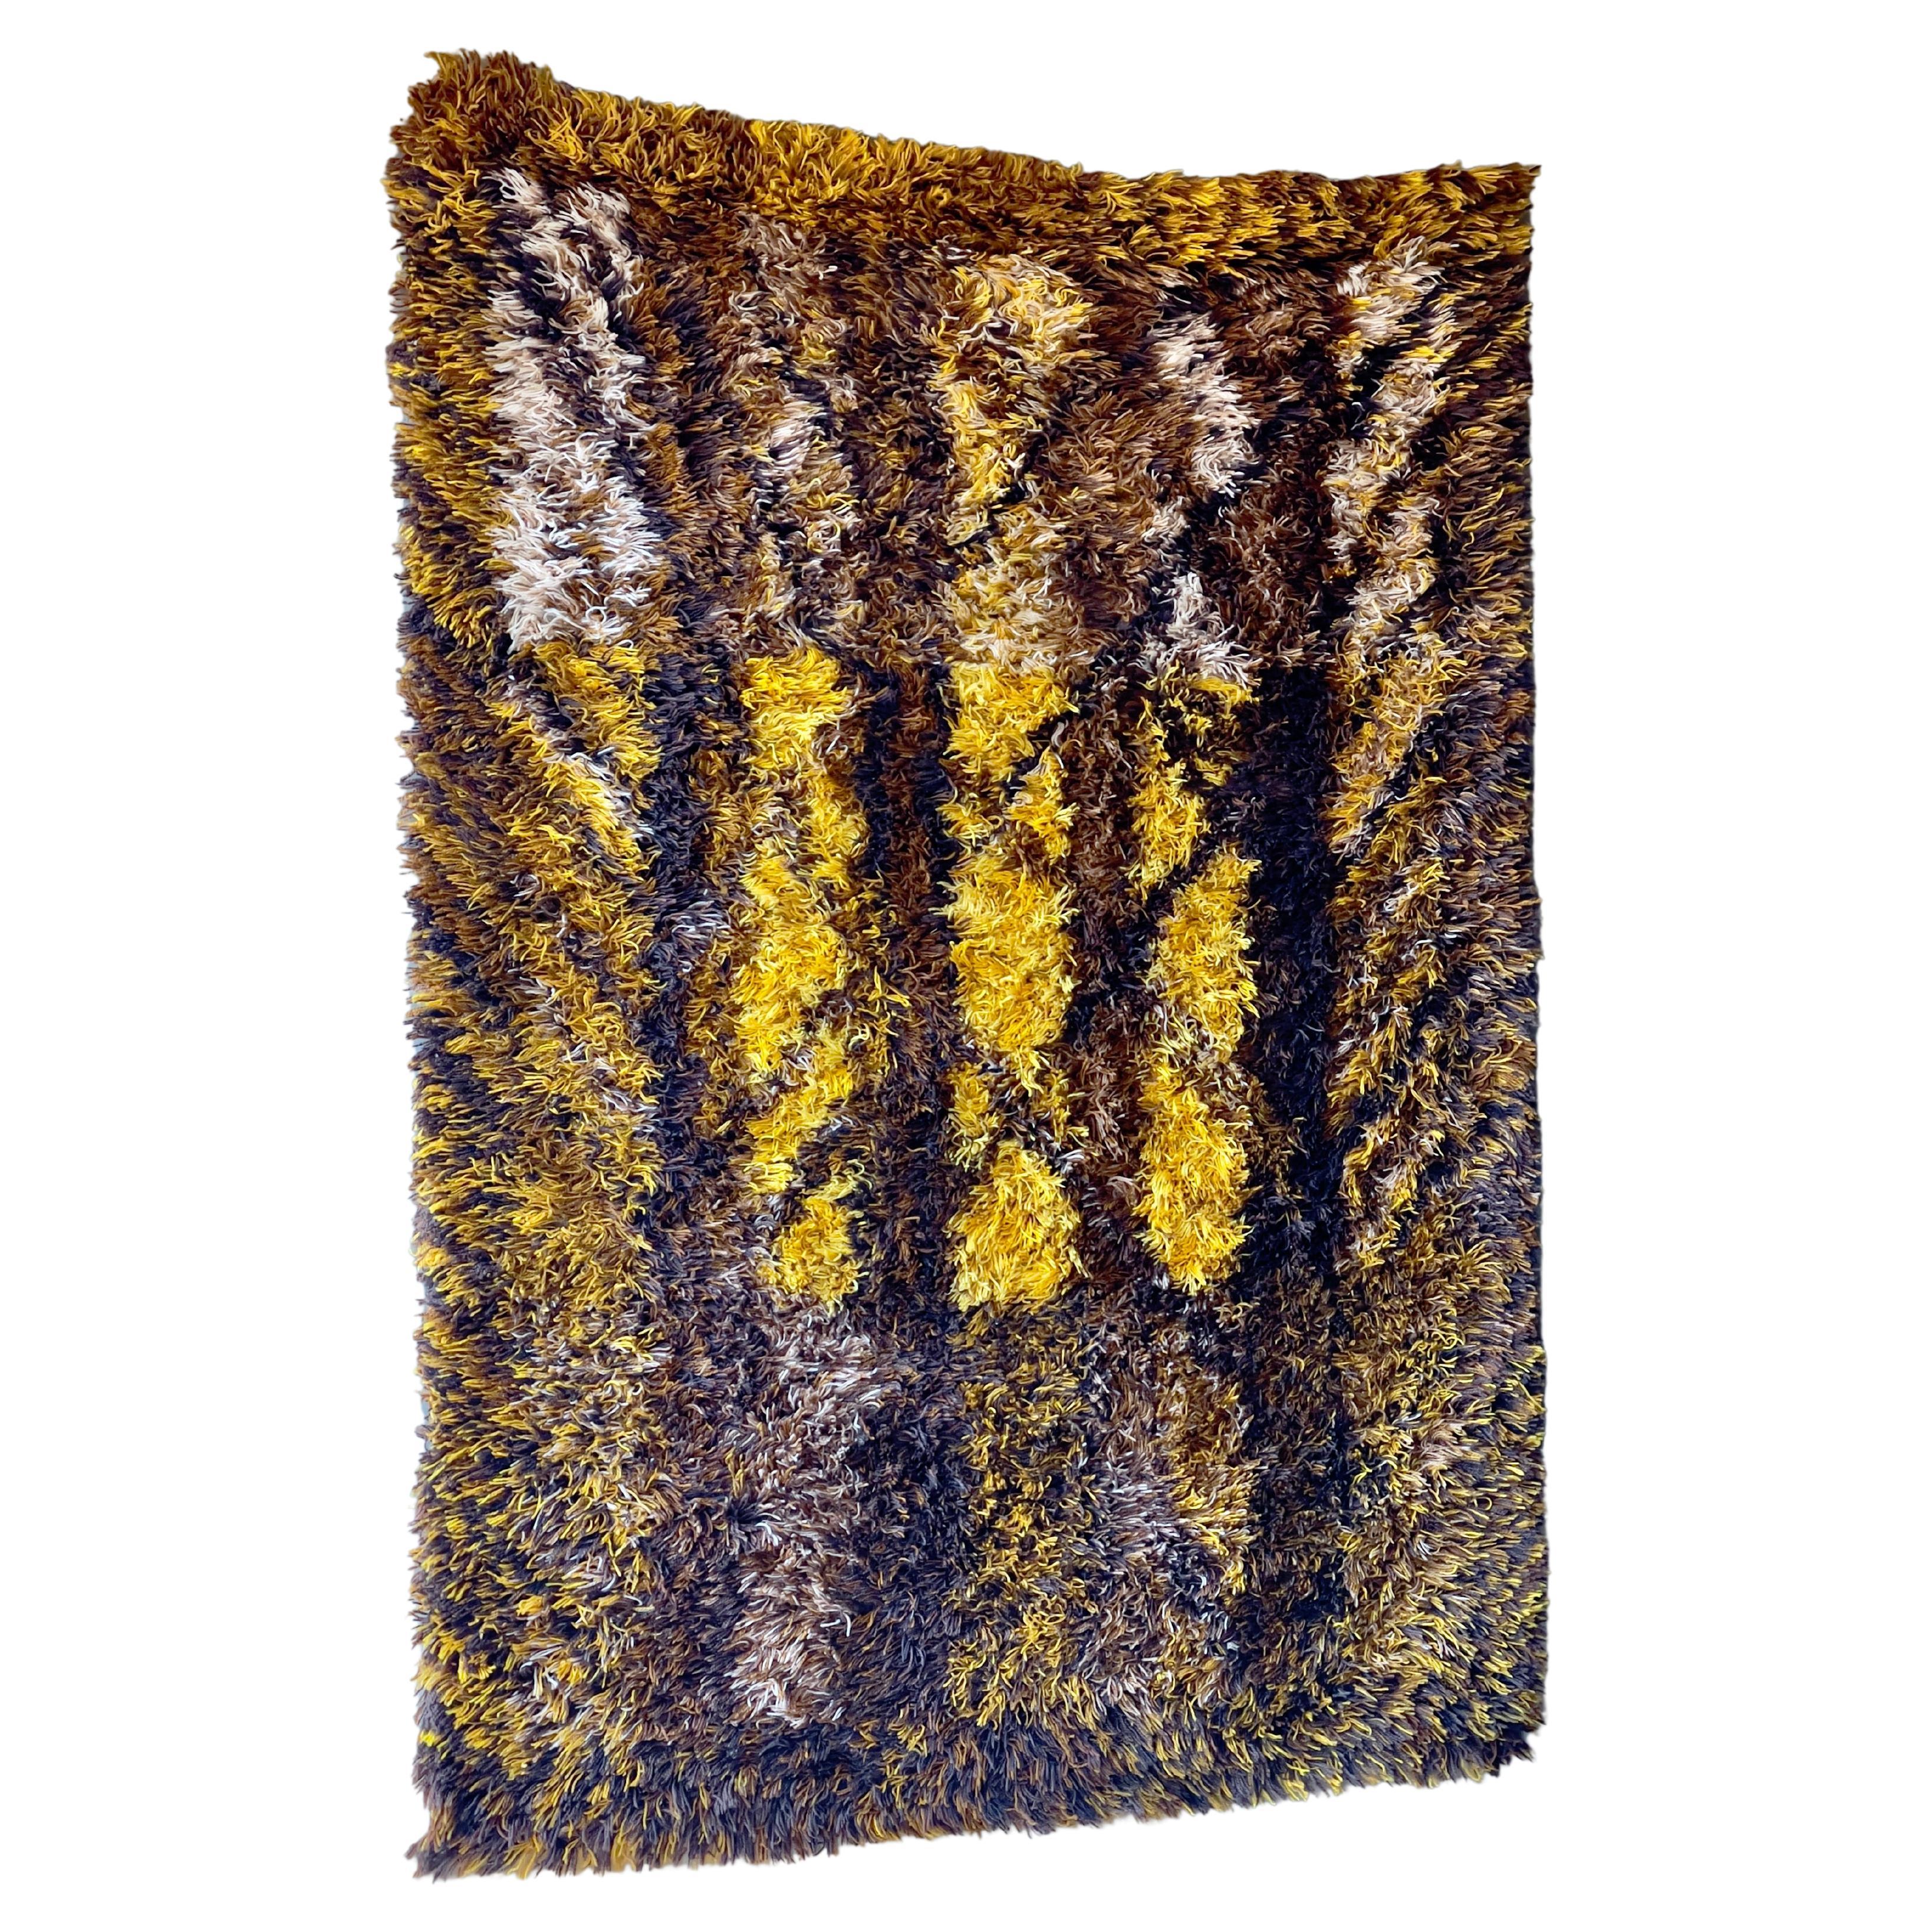 Schwedischer braun-gelber Rya-Teppich von Marianne Richter für Ötergyllen rya, 1960er Jahre. Handgefertigt in Rya-Webtechnik aus 100% Wolle.

Die schwedische Textilkünstlerin Marianne Richter ist international für ihre außergewöhnlichen Teppiche ,